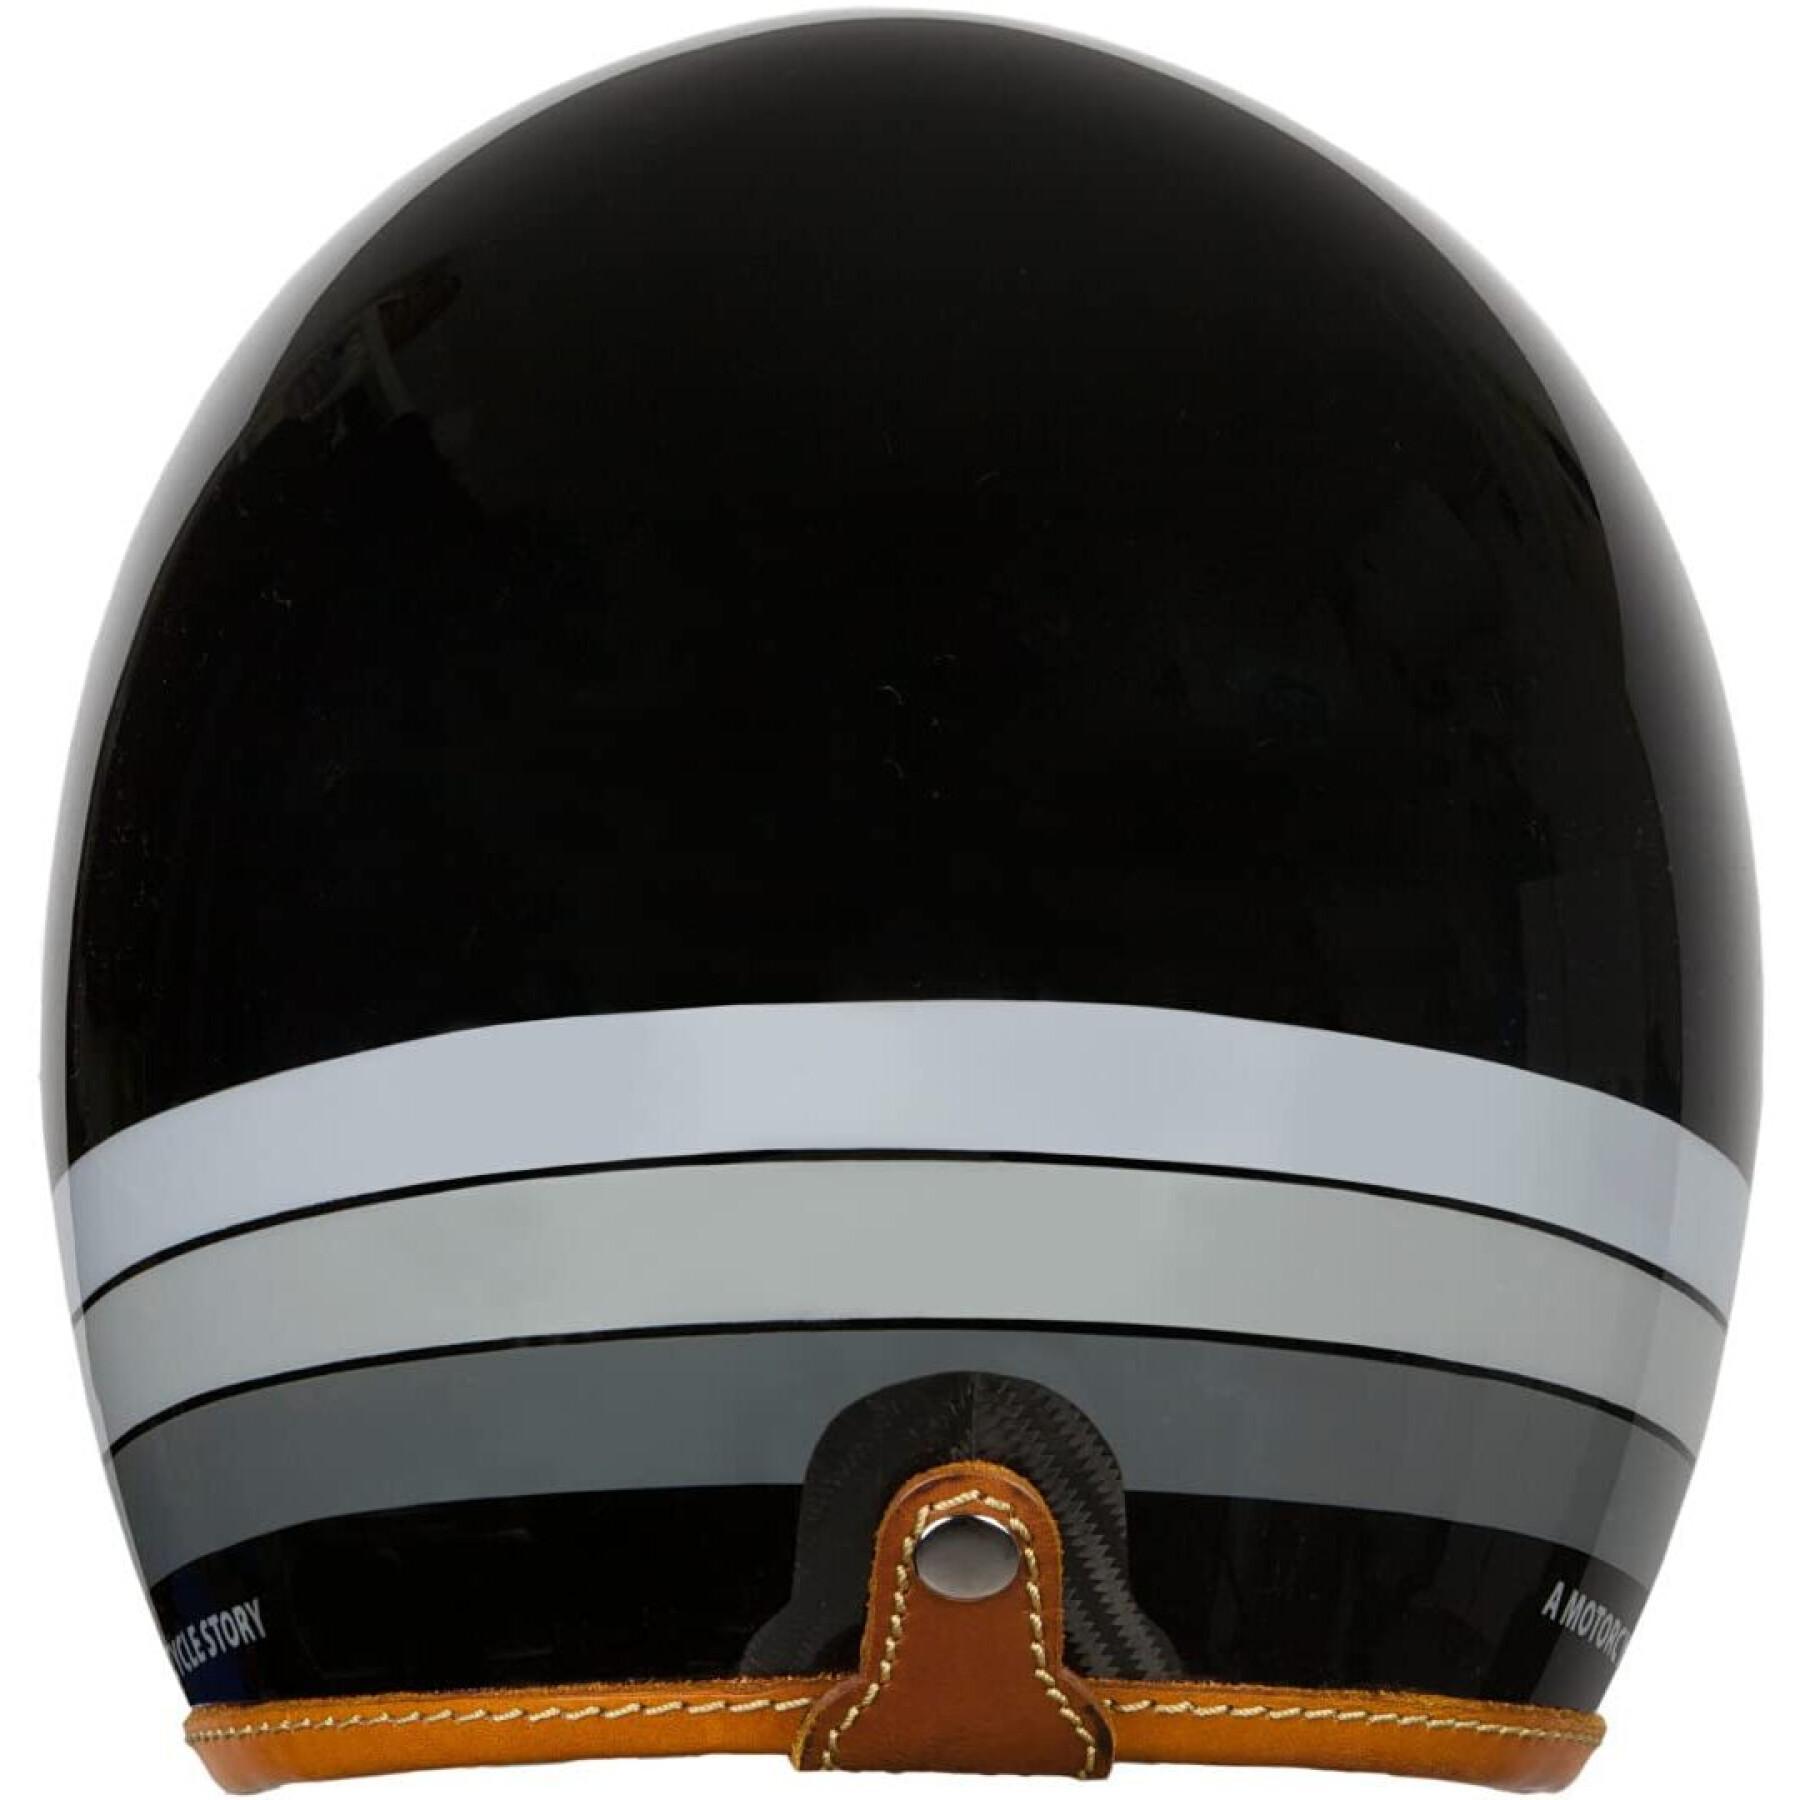 Carbon fiber helmet Helstons mora helmet